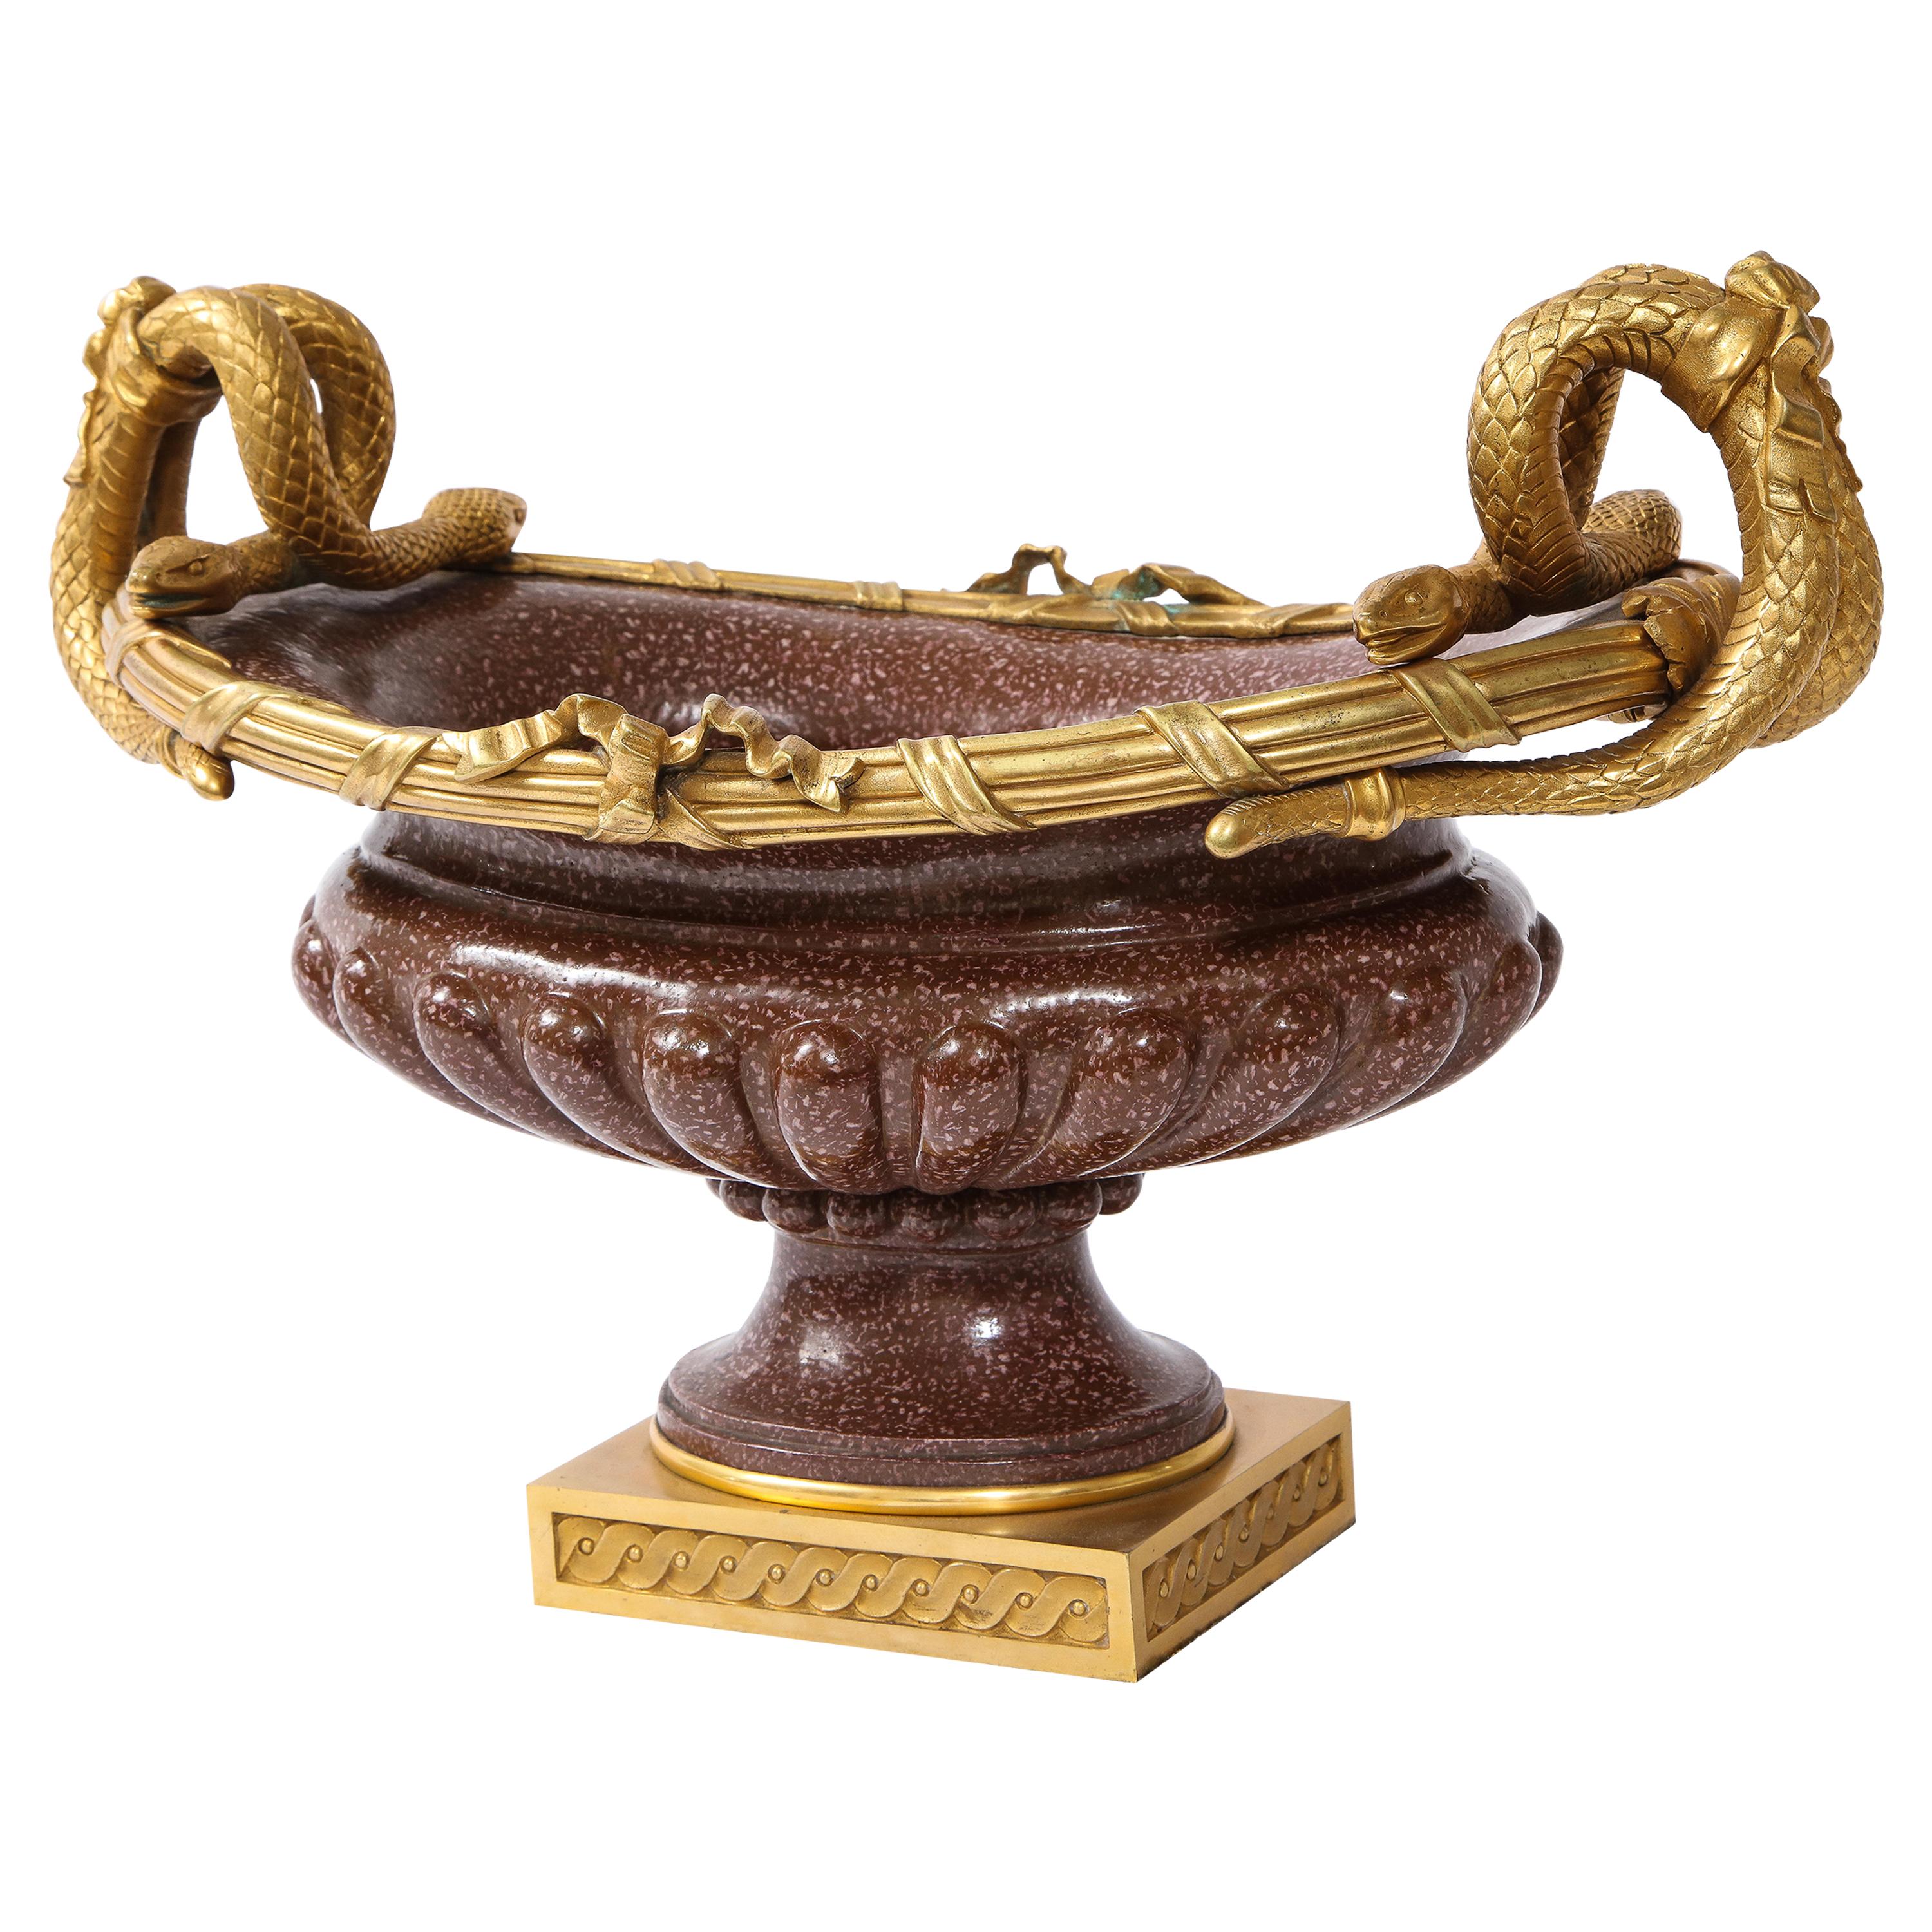 Centre de table français du 19ème siècle en bronze doré avec poignée en forme de serpent et fausse porcelaine de porphyre